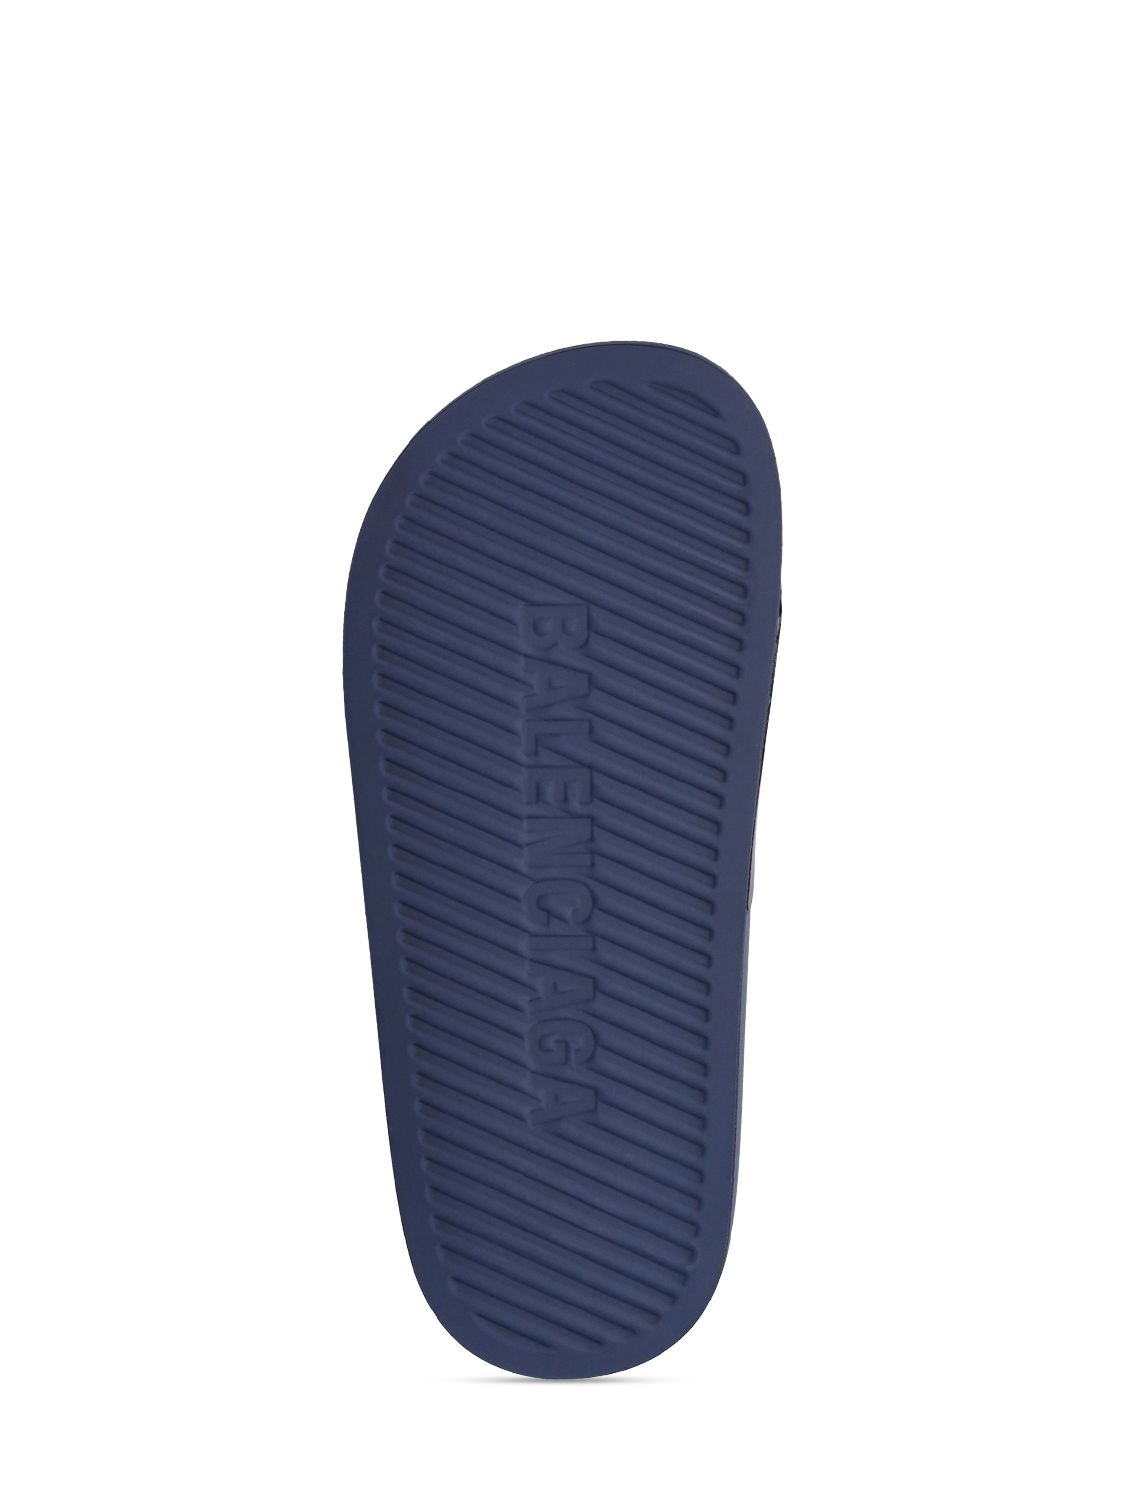 Shop Balenciaga Logo Rubber Slide Sandals In Navy